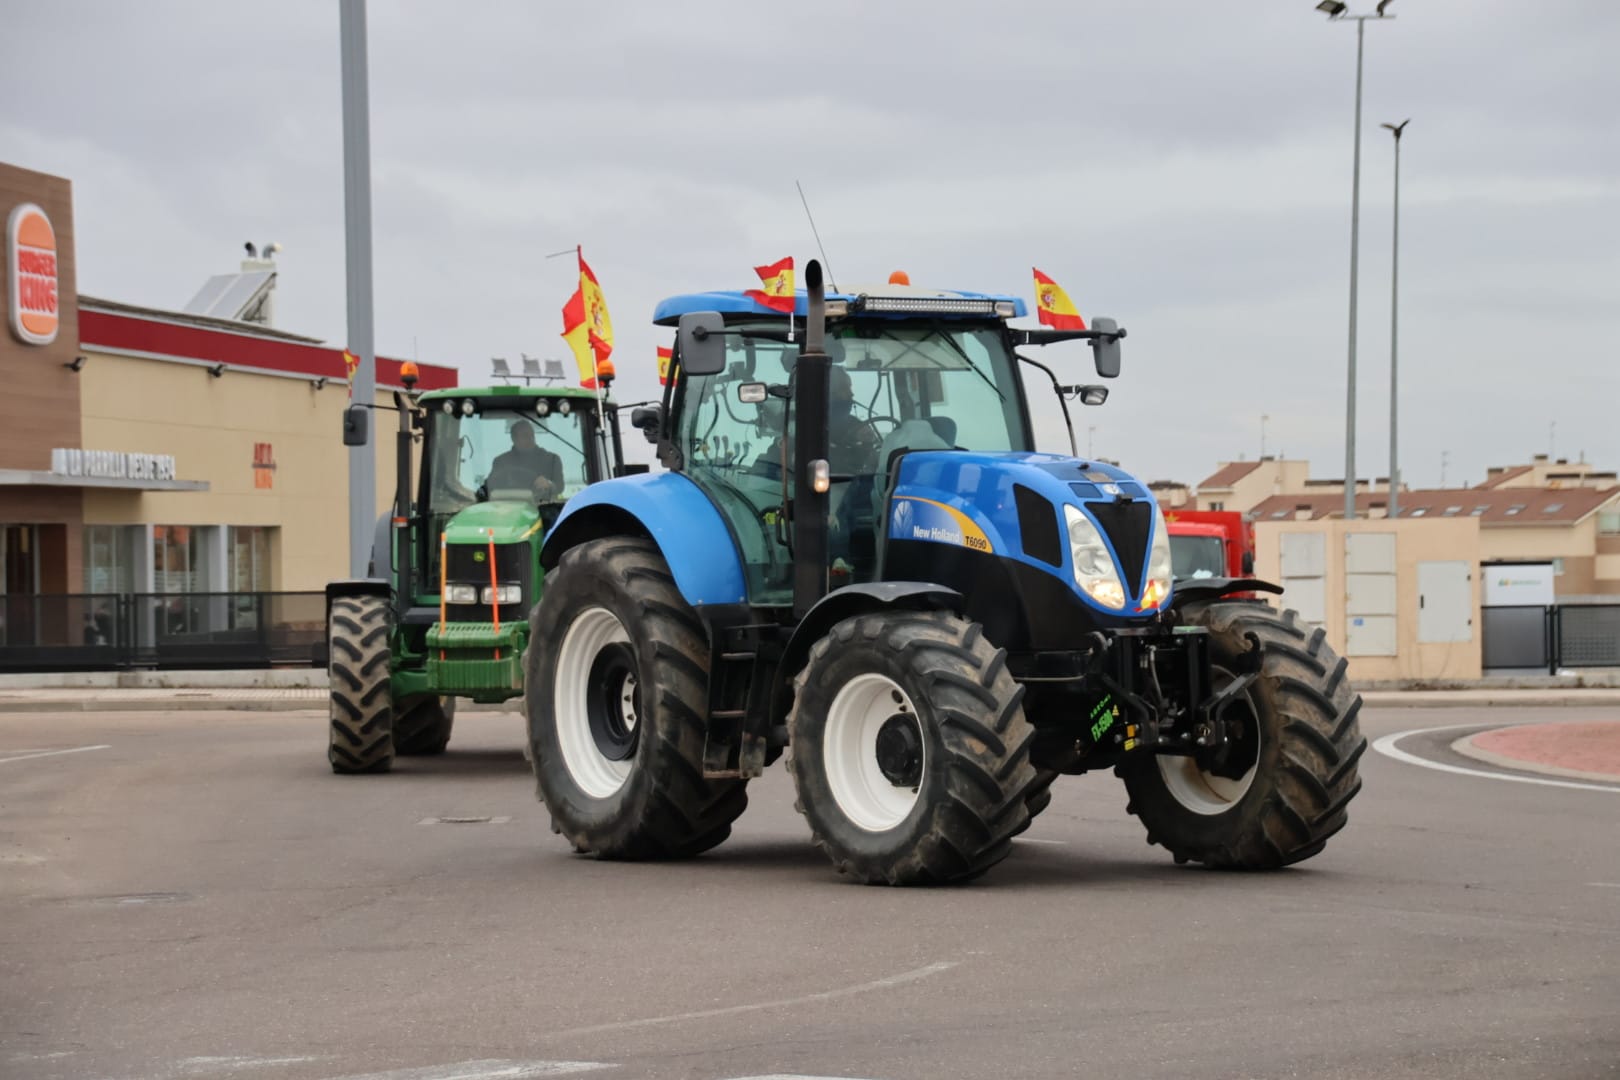 Tractorada en Salamanca este miércoles, 7 de febrero (5)